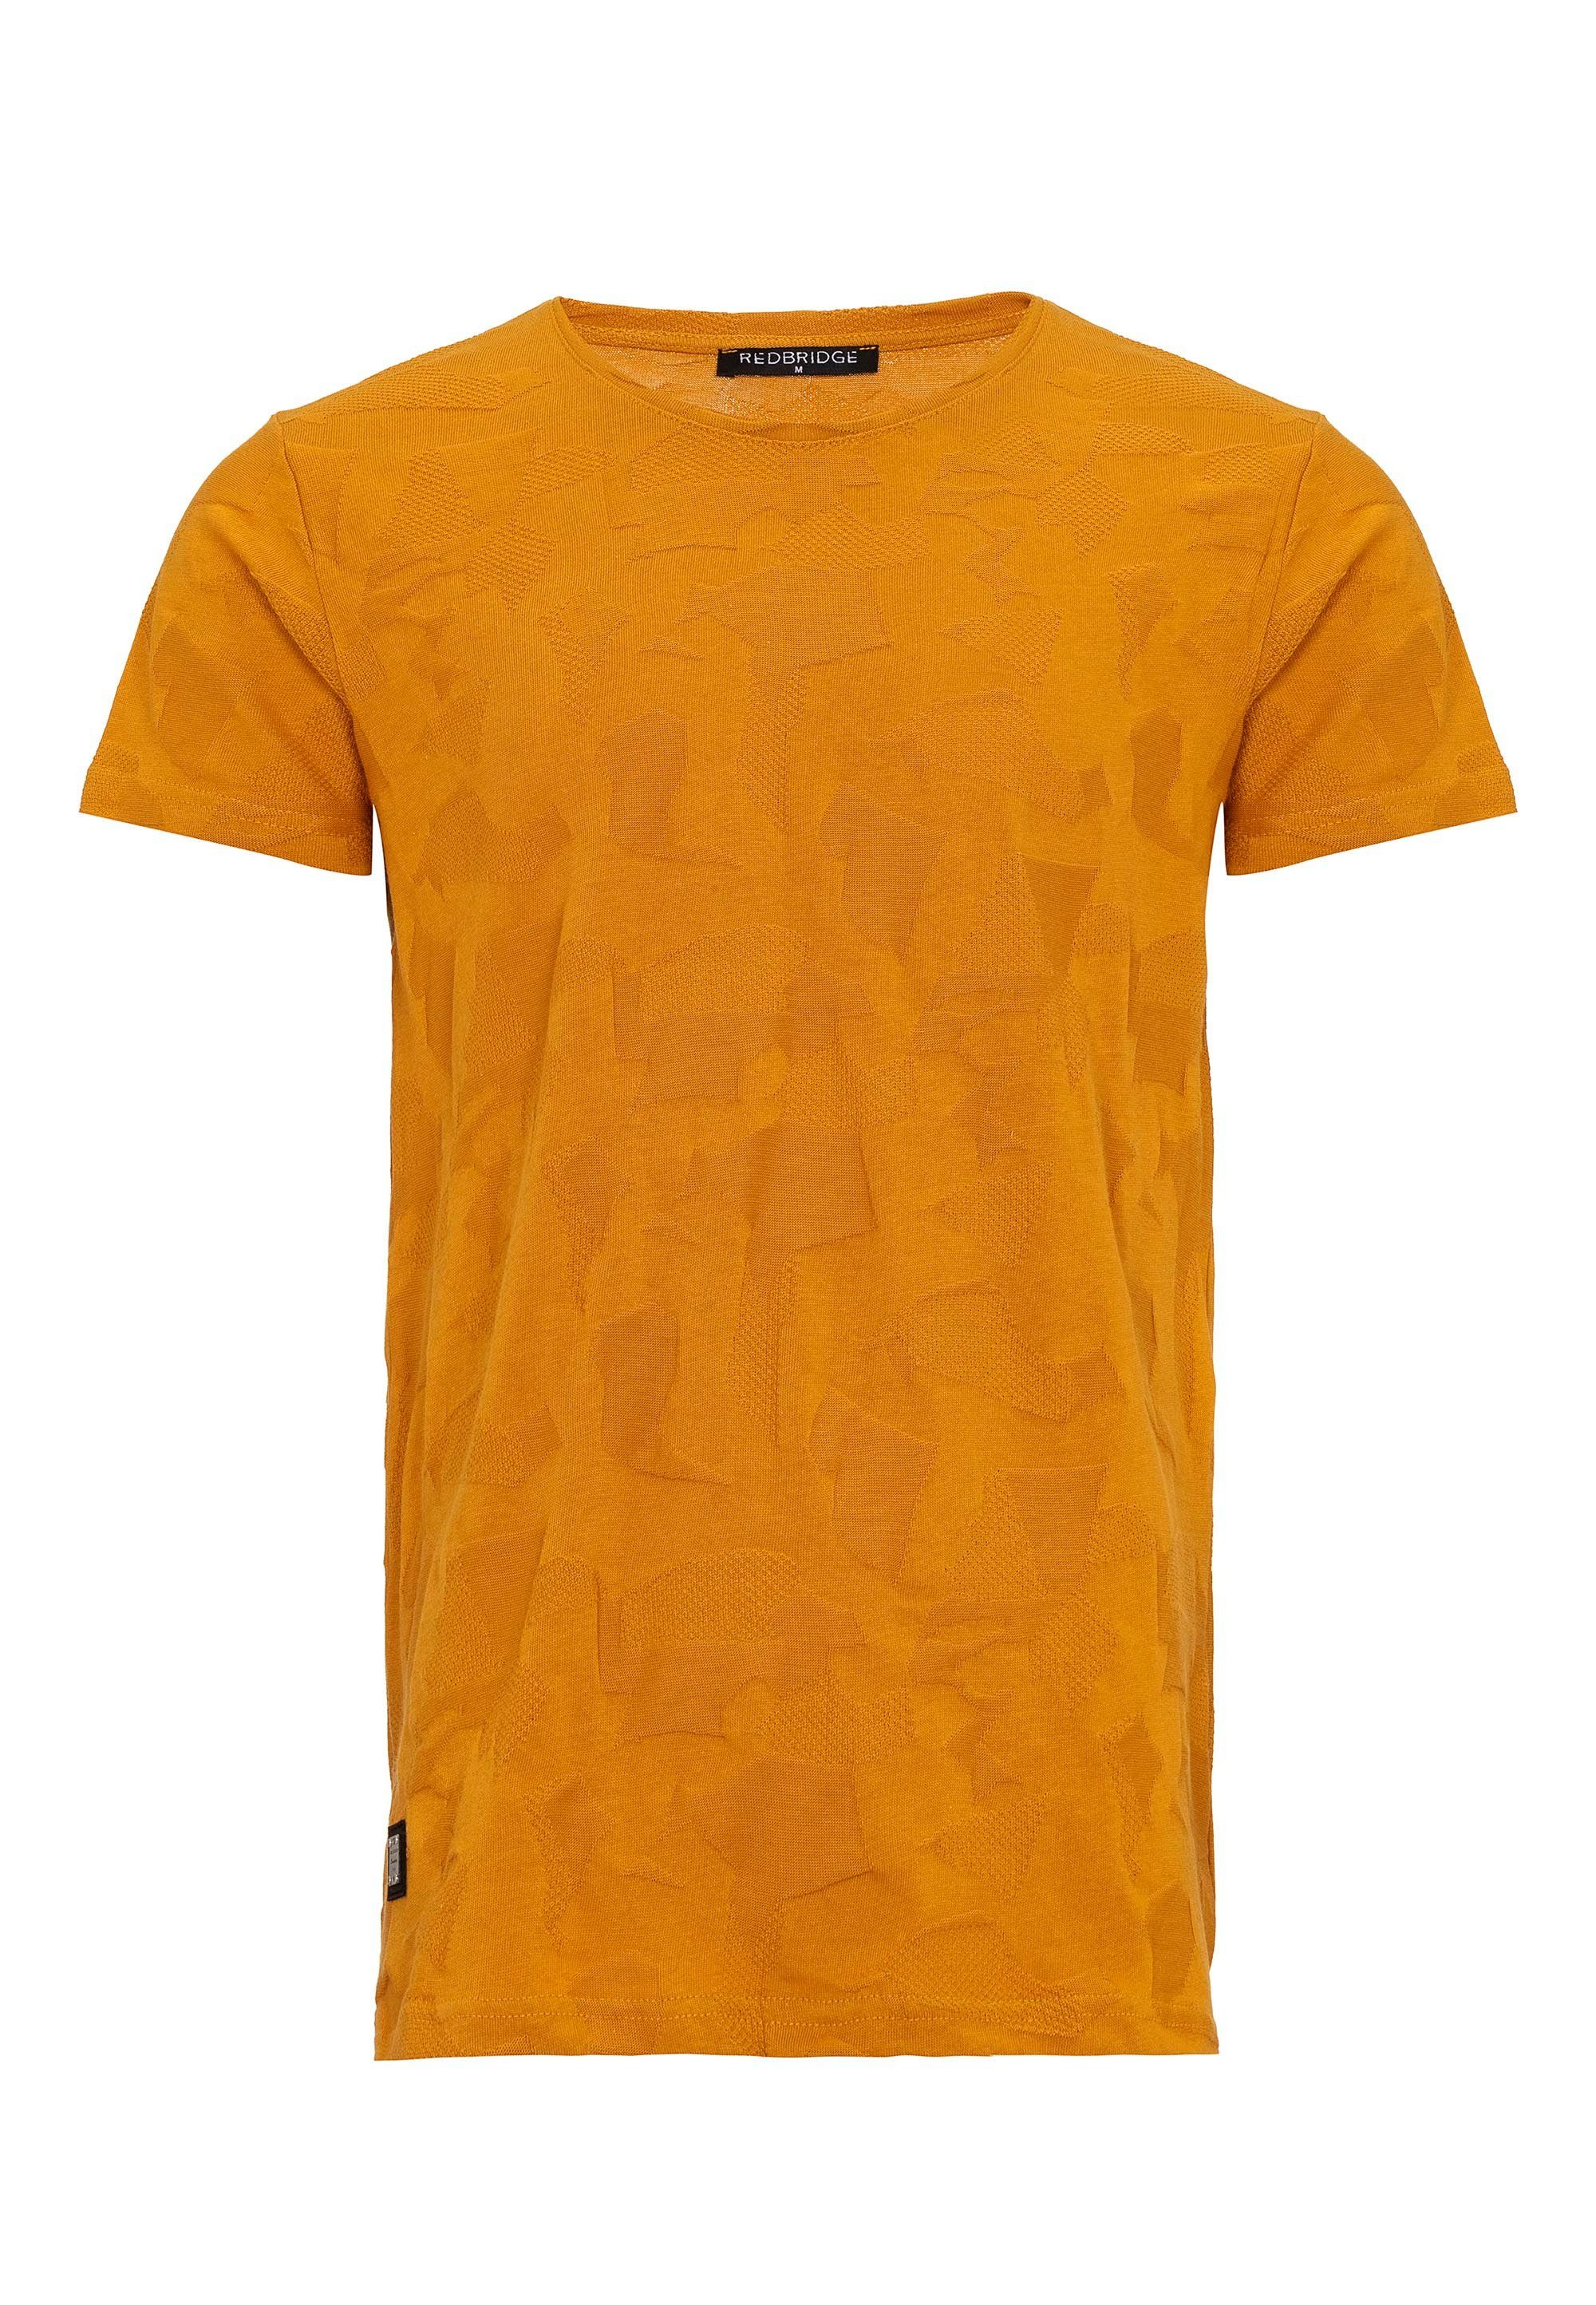 Rapids senf "Pressed-Pieces"-Design innovativem RedBridge T-Shirt mit Cedar